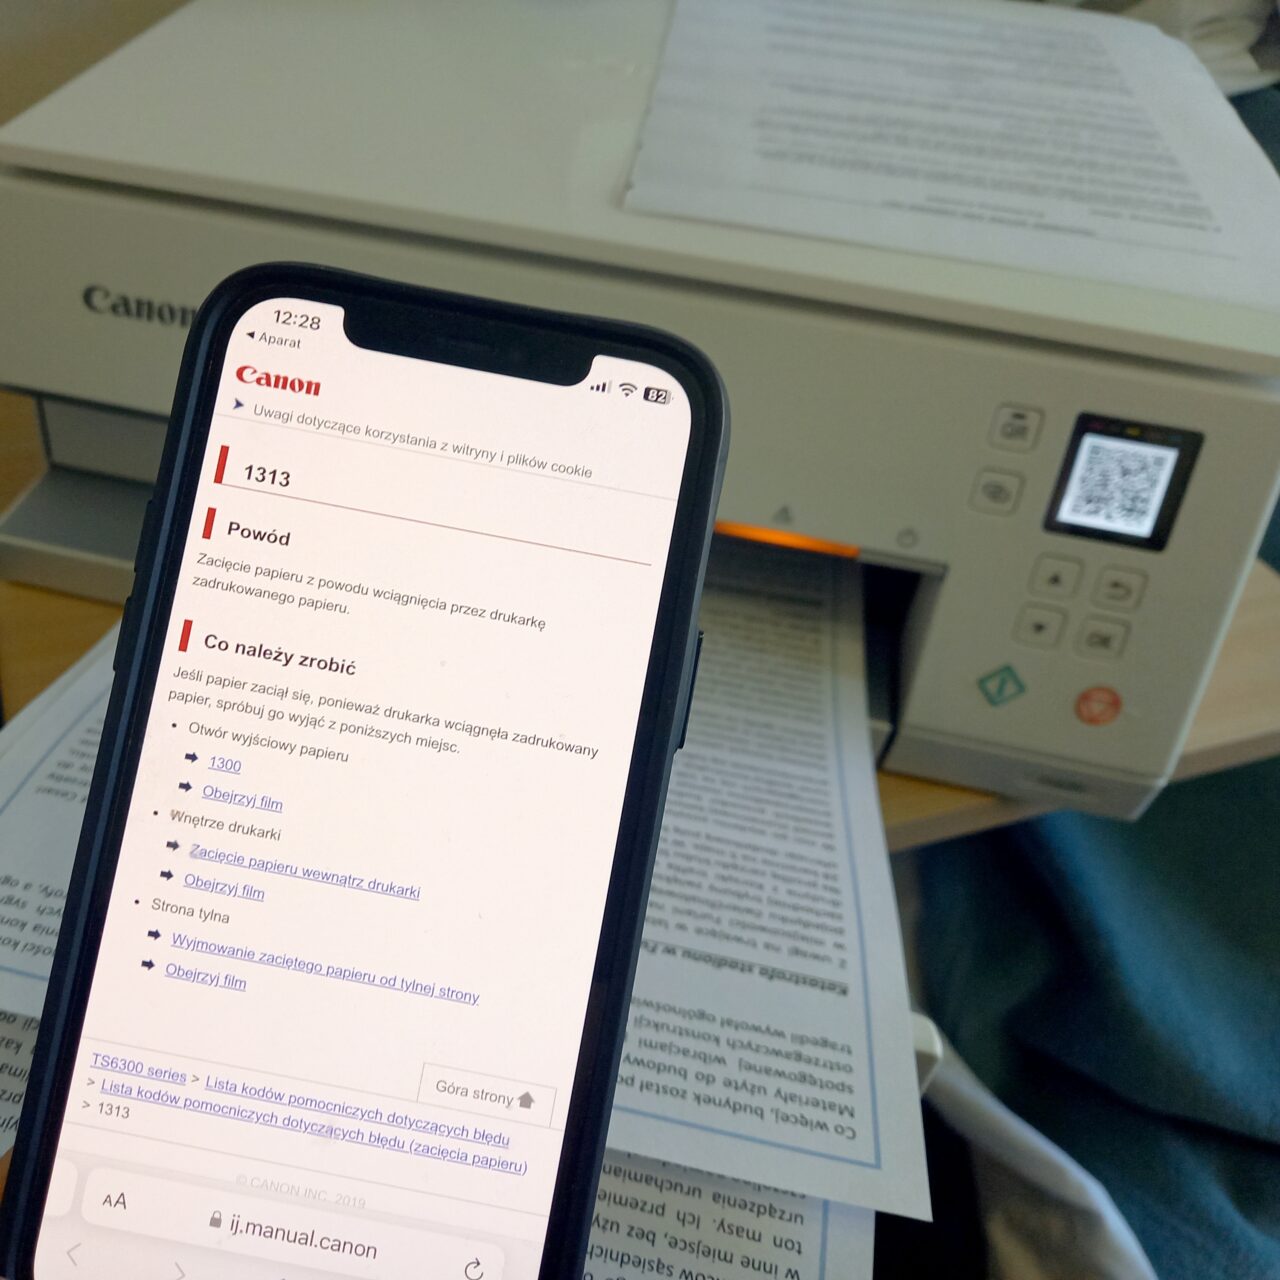 Smartfon wyświetlający stronę pomocy technicznej z instrukcjami dotyczącymi naprawy drukarki Canon, widocznej w tle na biurku z papierami.